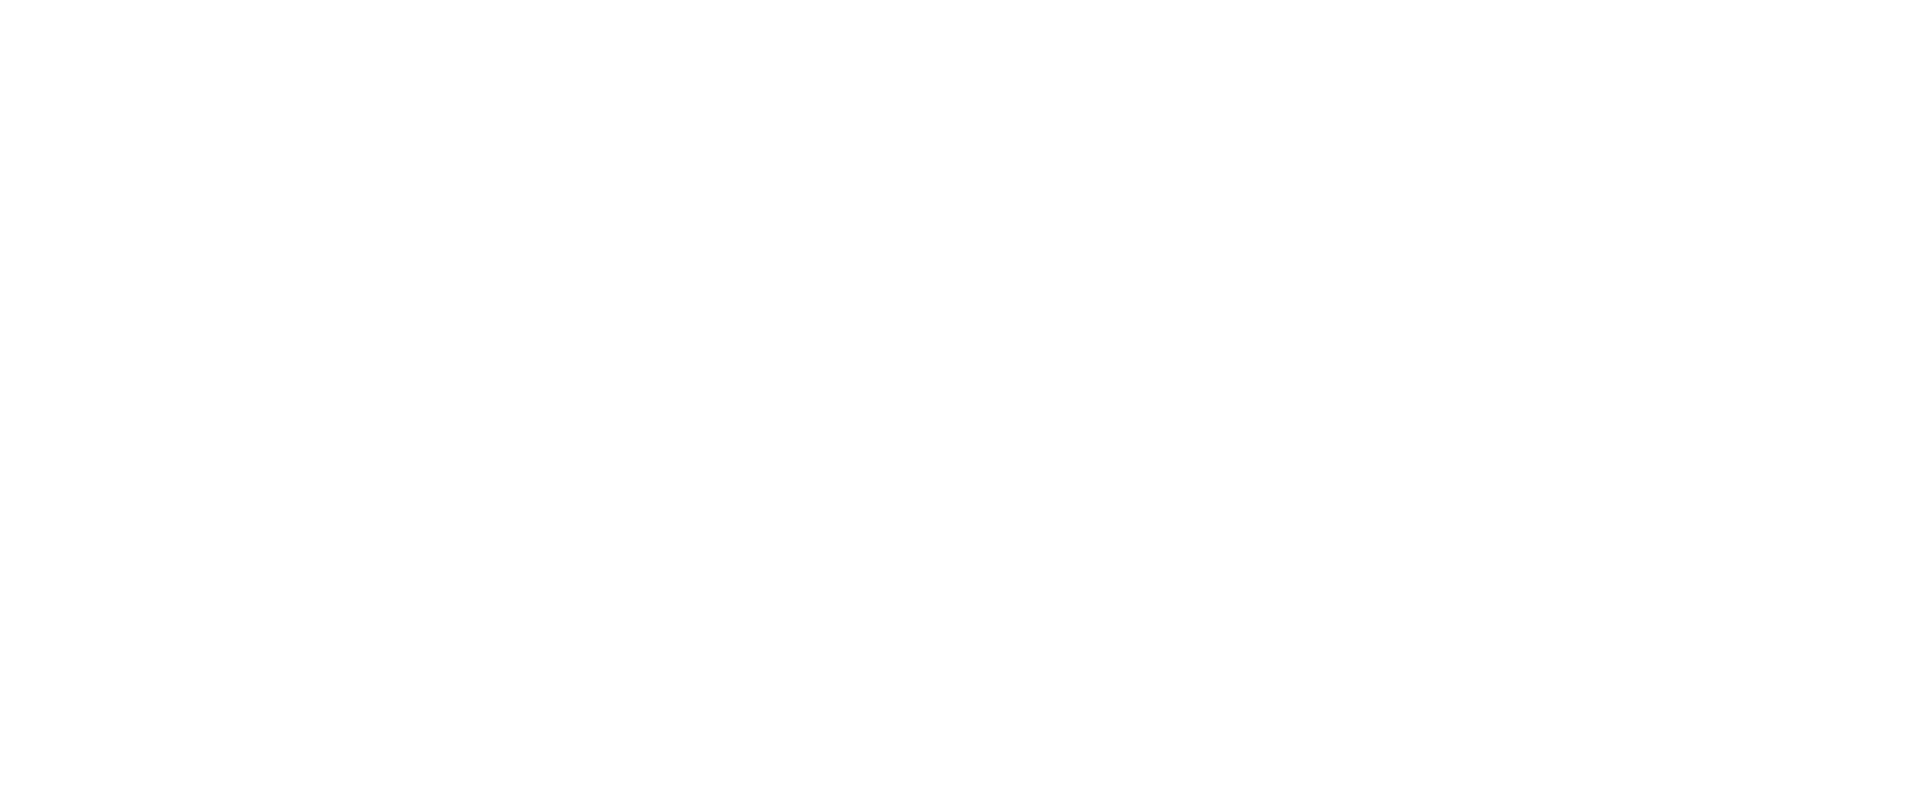 Heart Space Spiritual Center Logo PNG